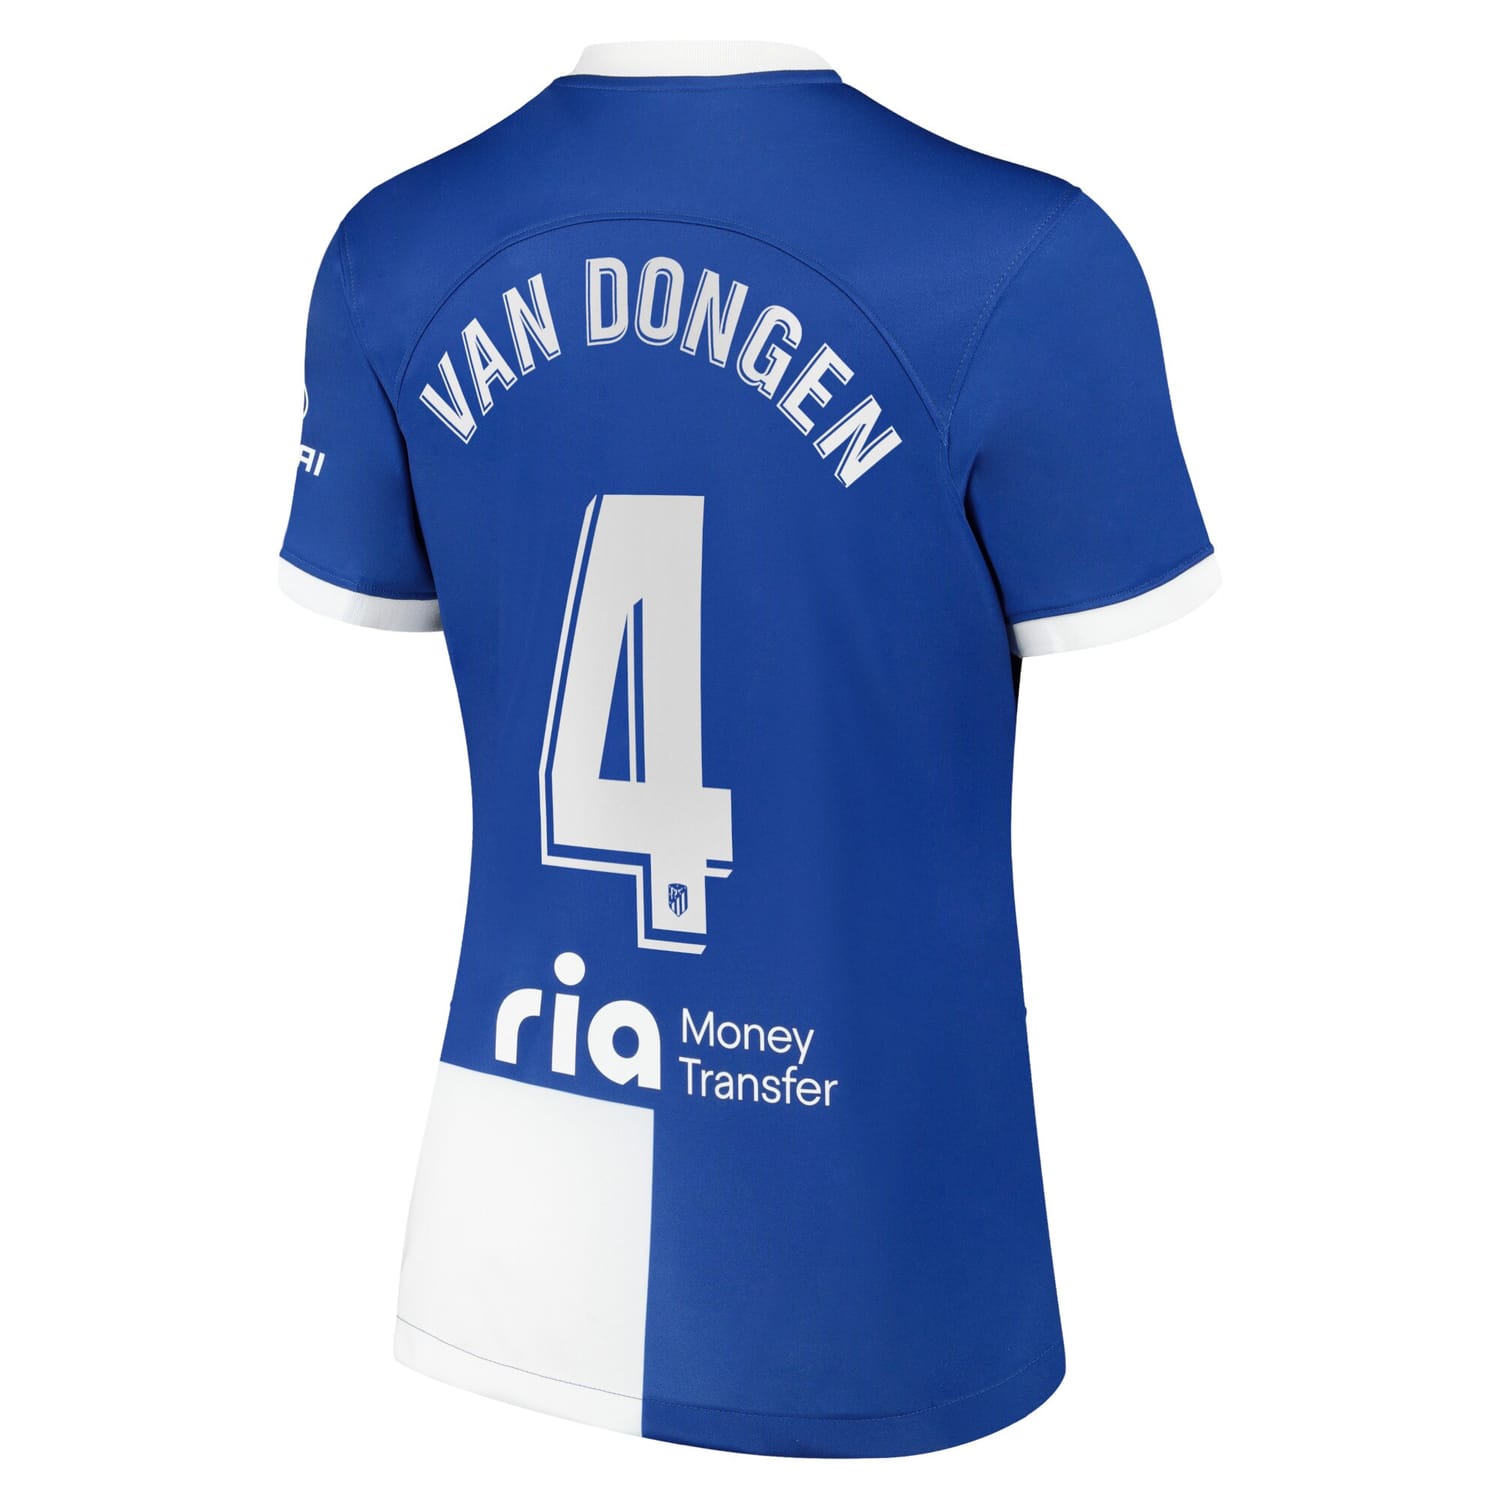 La Liga Atletico de Madrid Jersey Shirt 2022-23 player Merel van Dongen 4 printing for Women